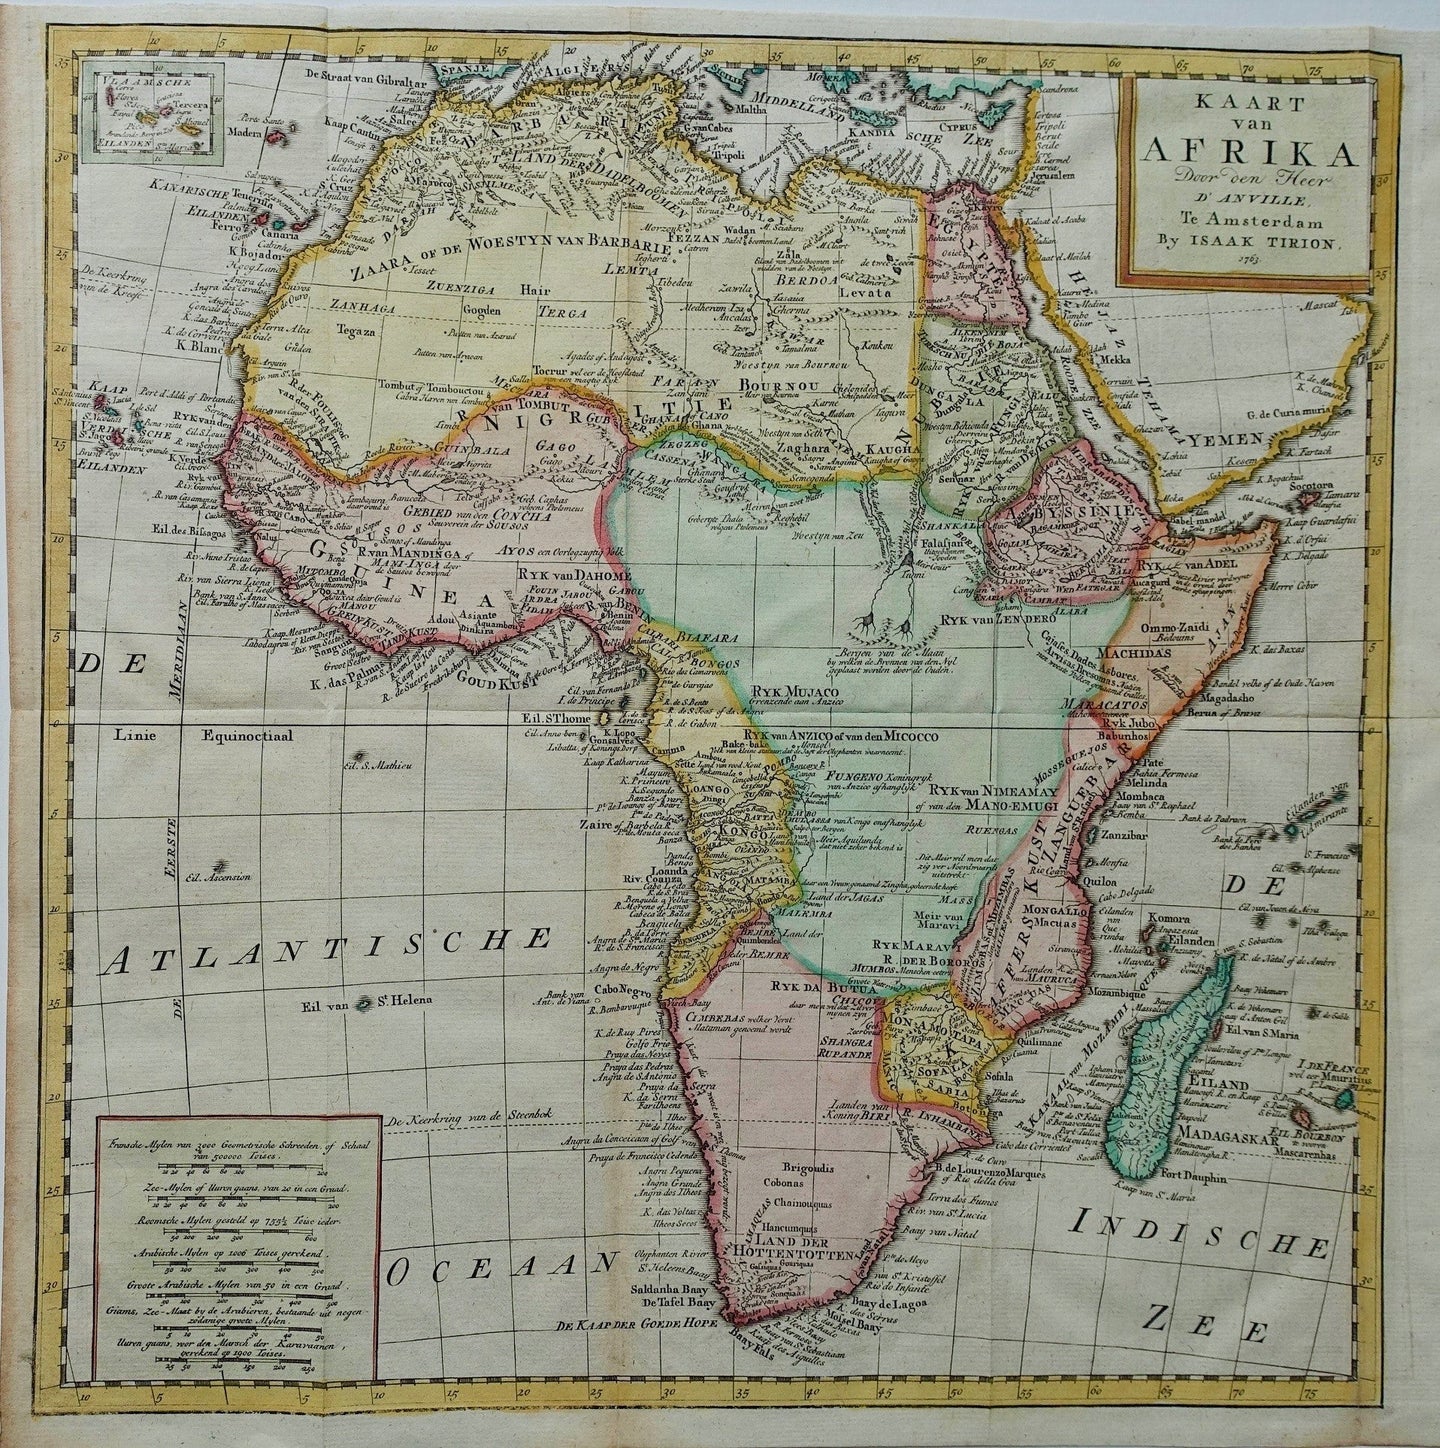 Afrika Africa - JB d'Anville / I Tirion - 1763